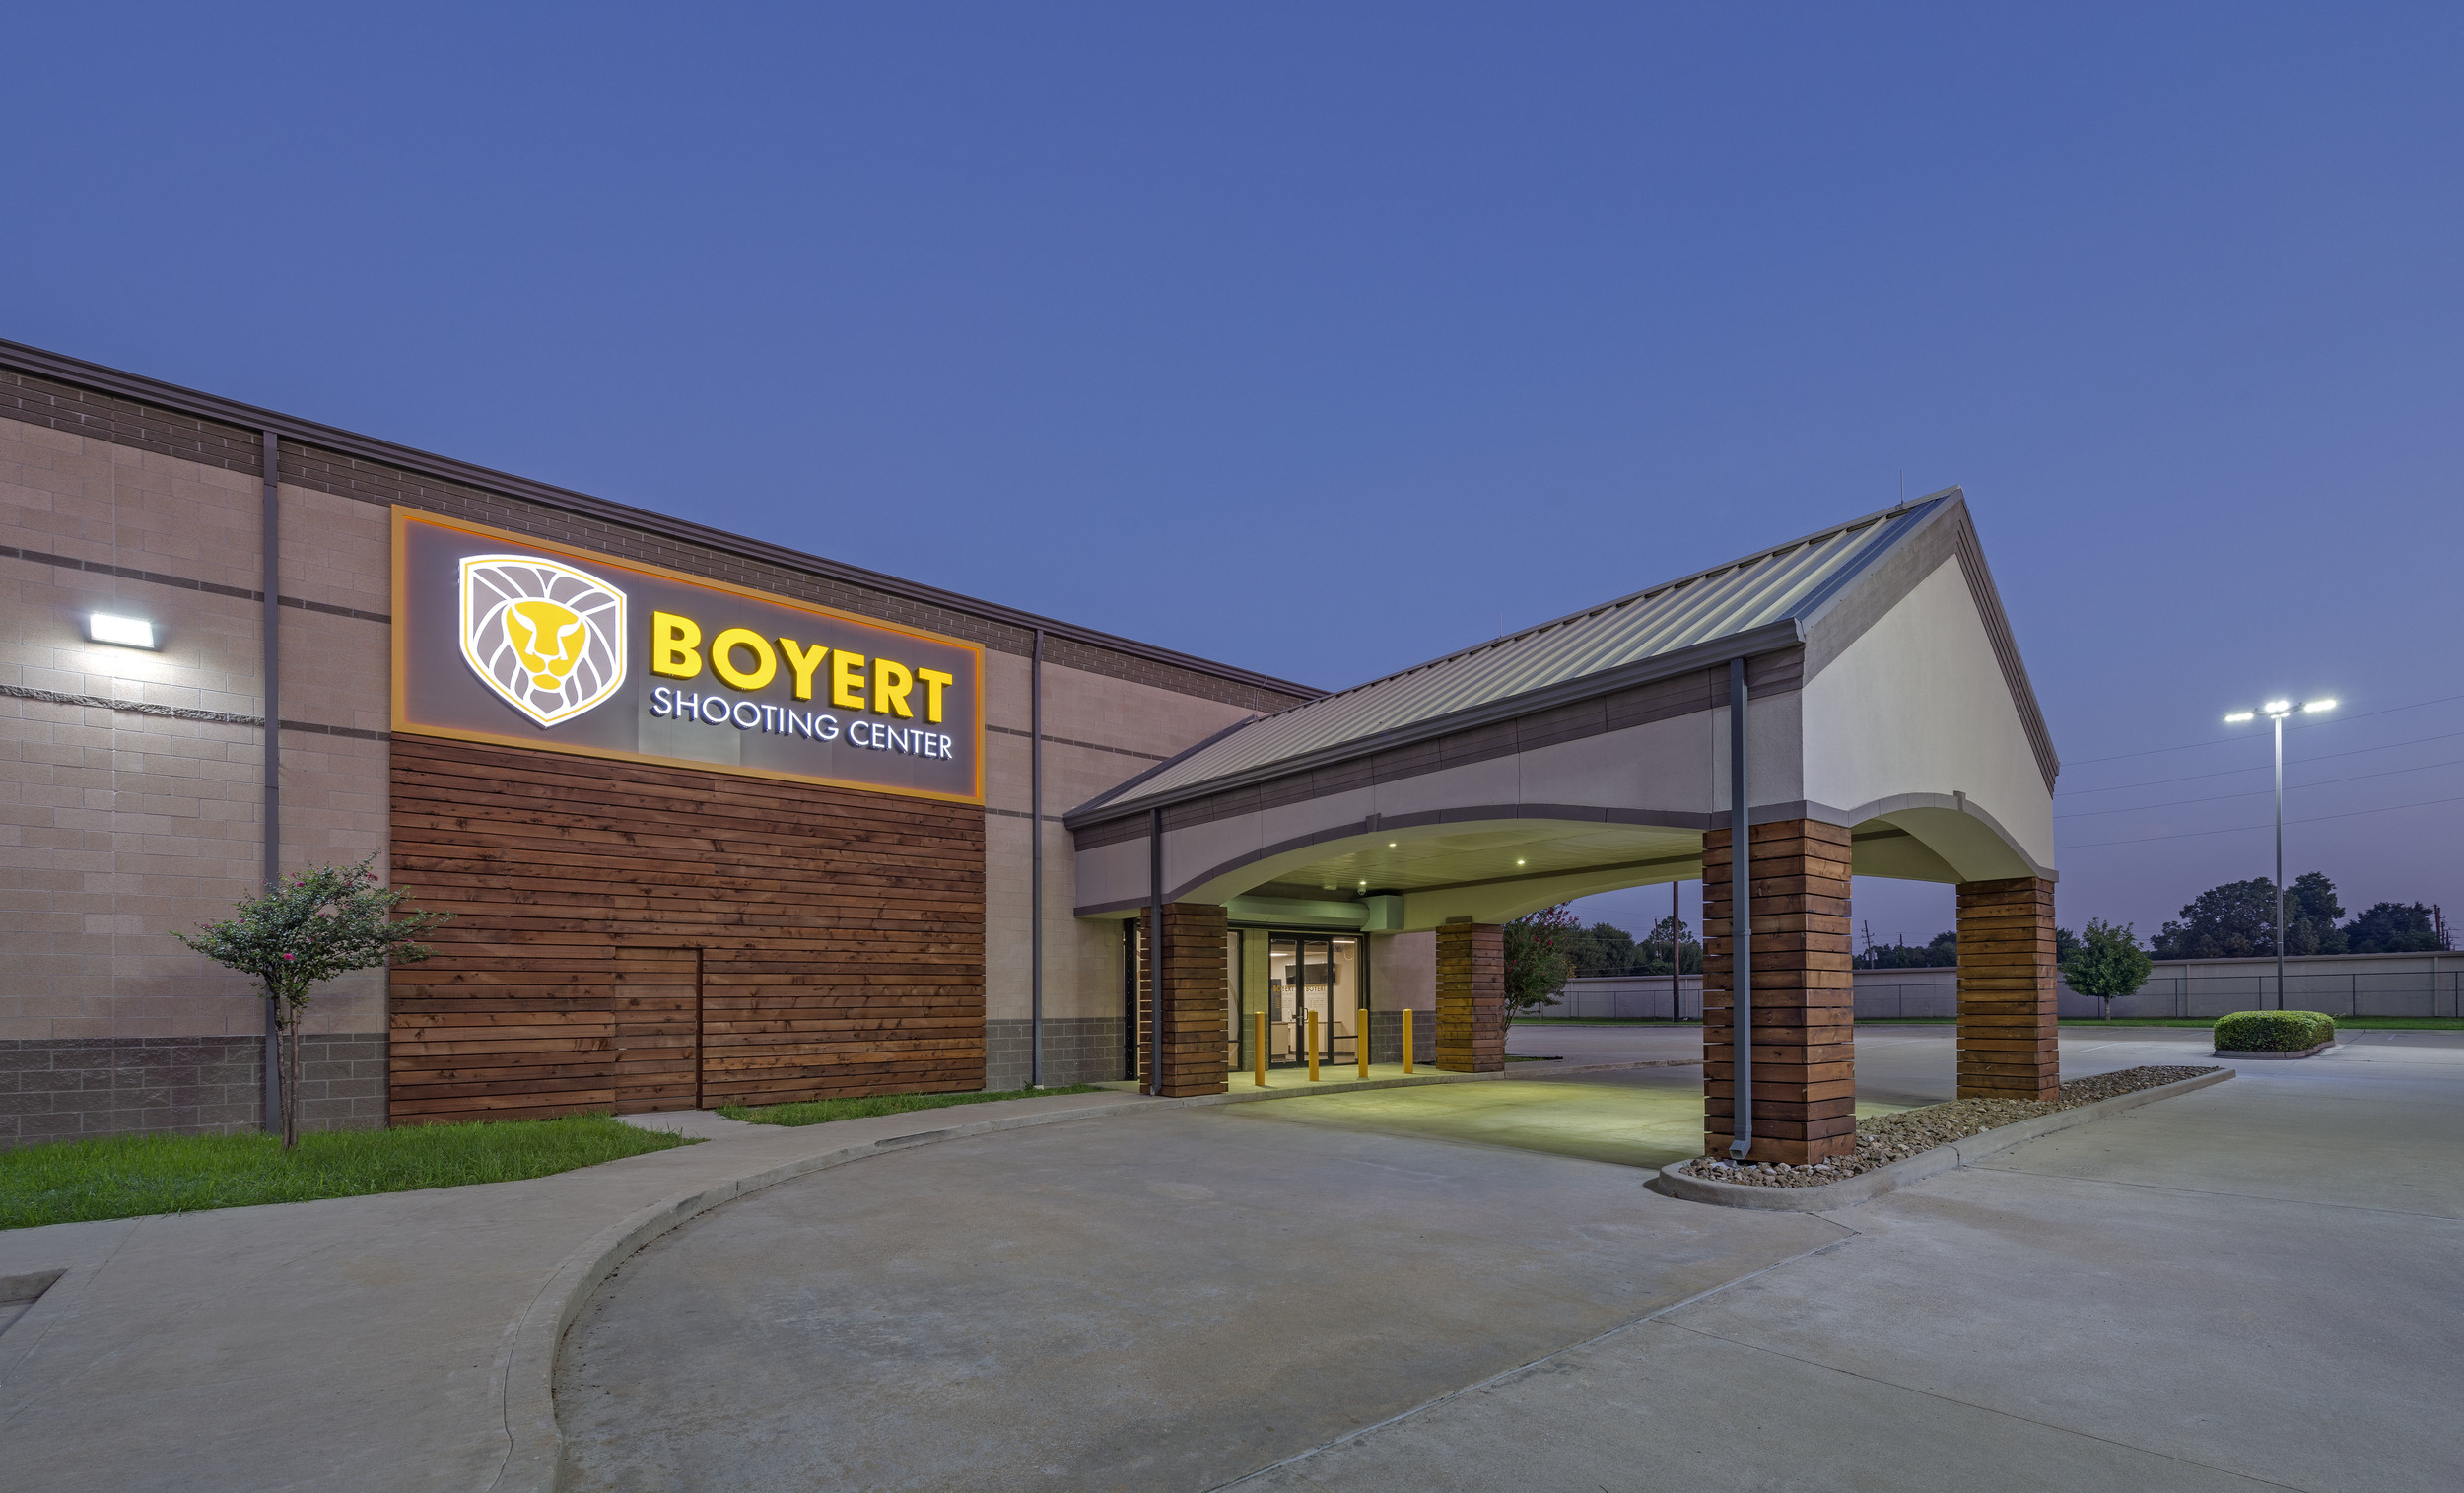 Boyert Shooting Center